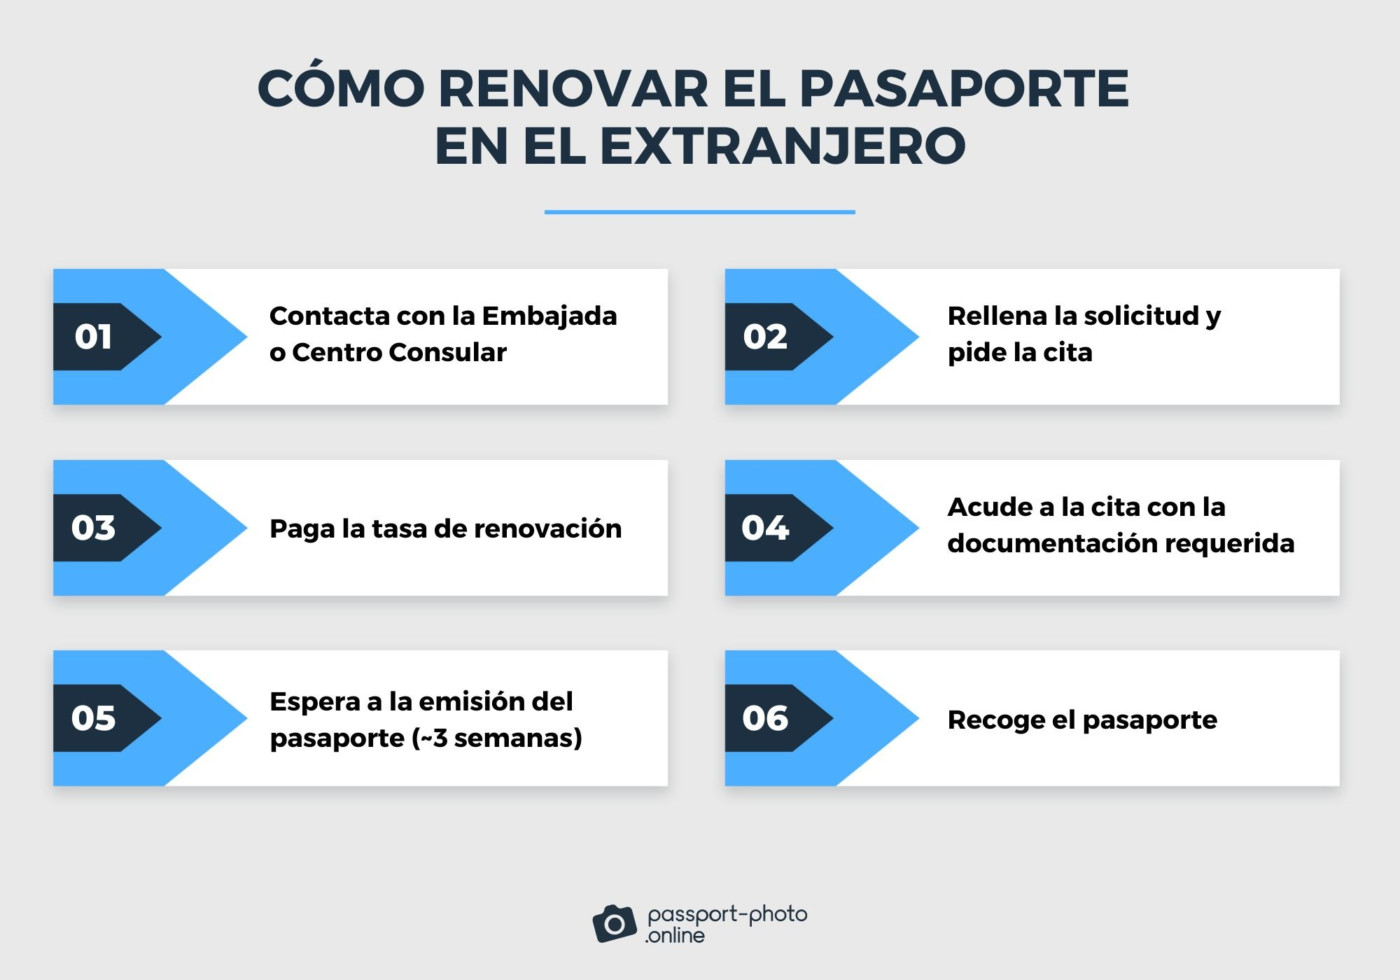 Una infografía muestra los 6 pasos a seguir para renovar un pasaporte en el extranjero.